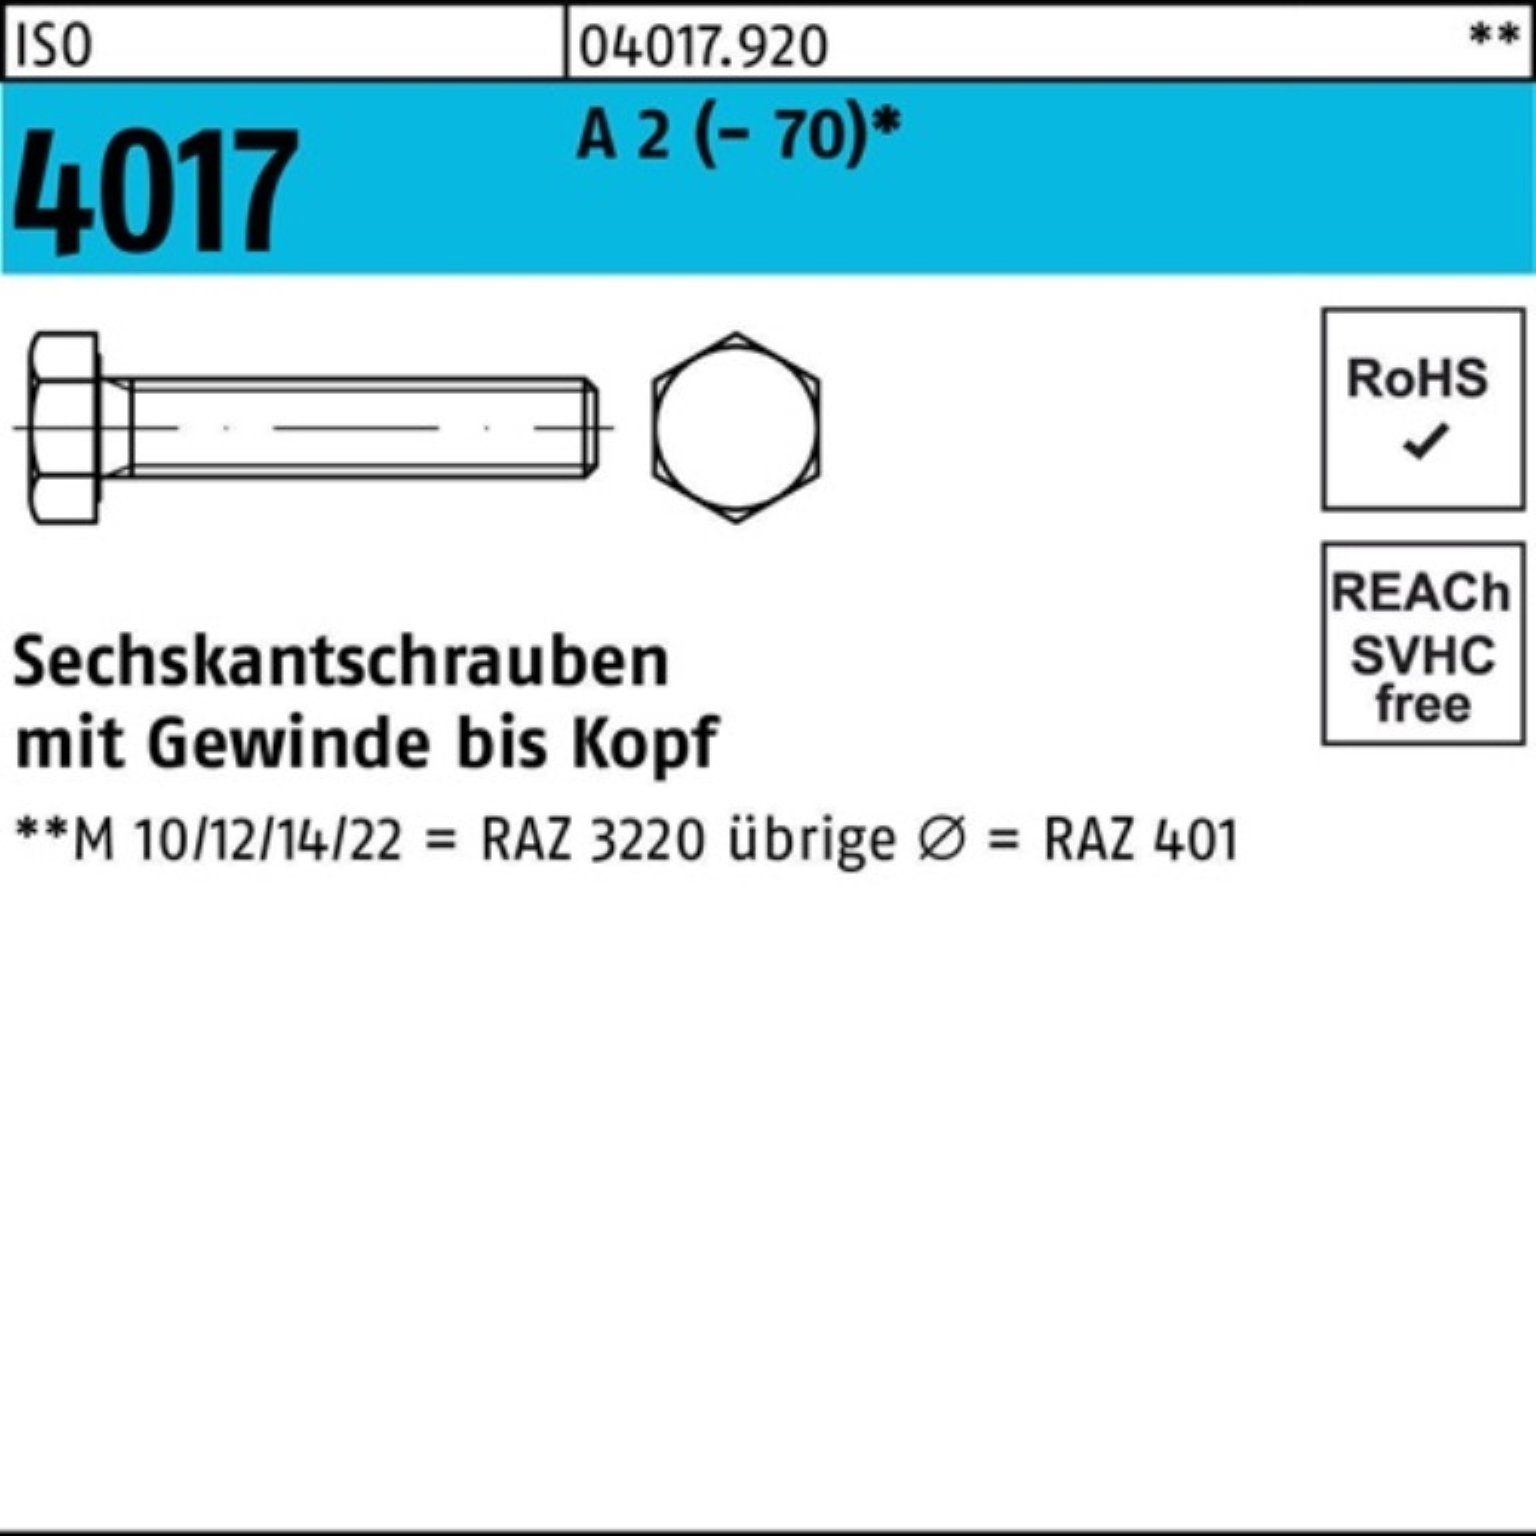 Bufab Sechskantschraube 100er Pack Sechskantschraube ISO 4017 VG M14x 110 A 2 (70) 25 Stück